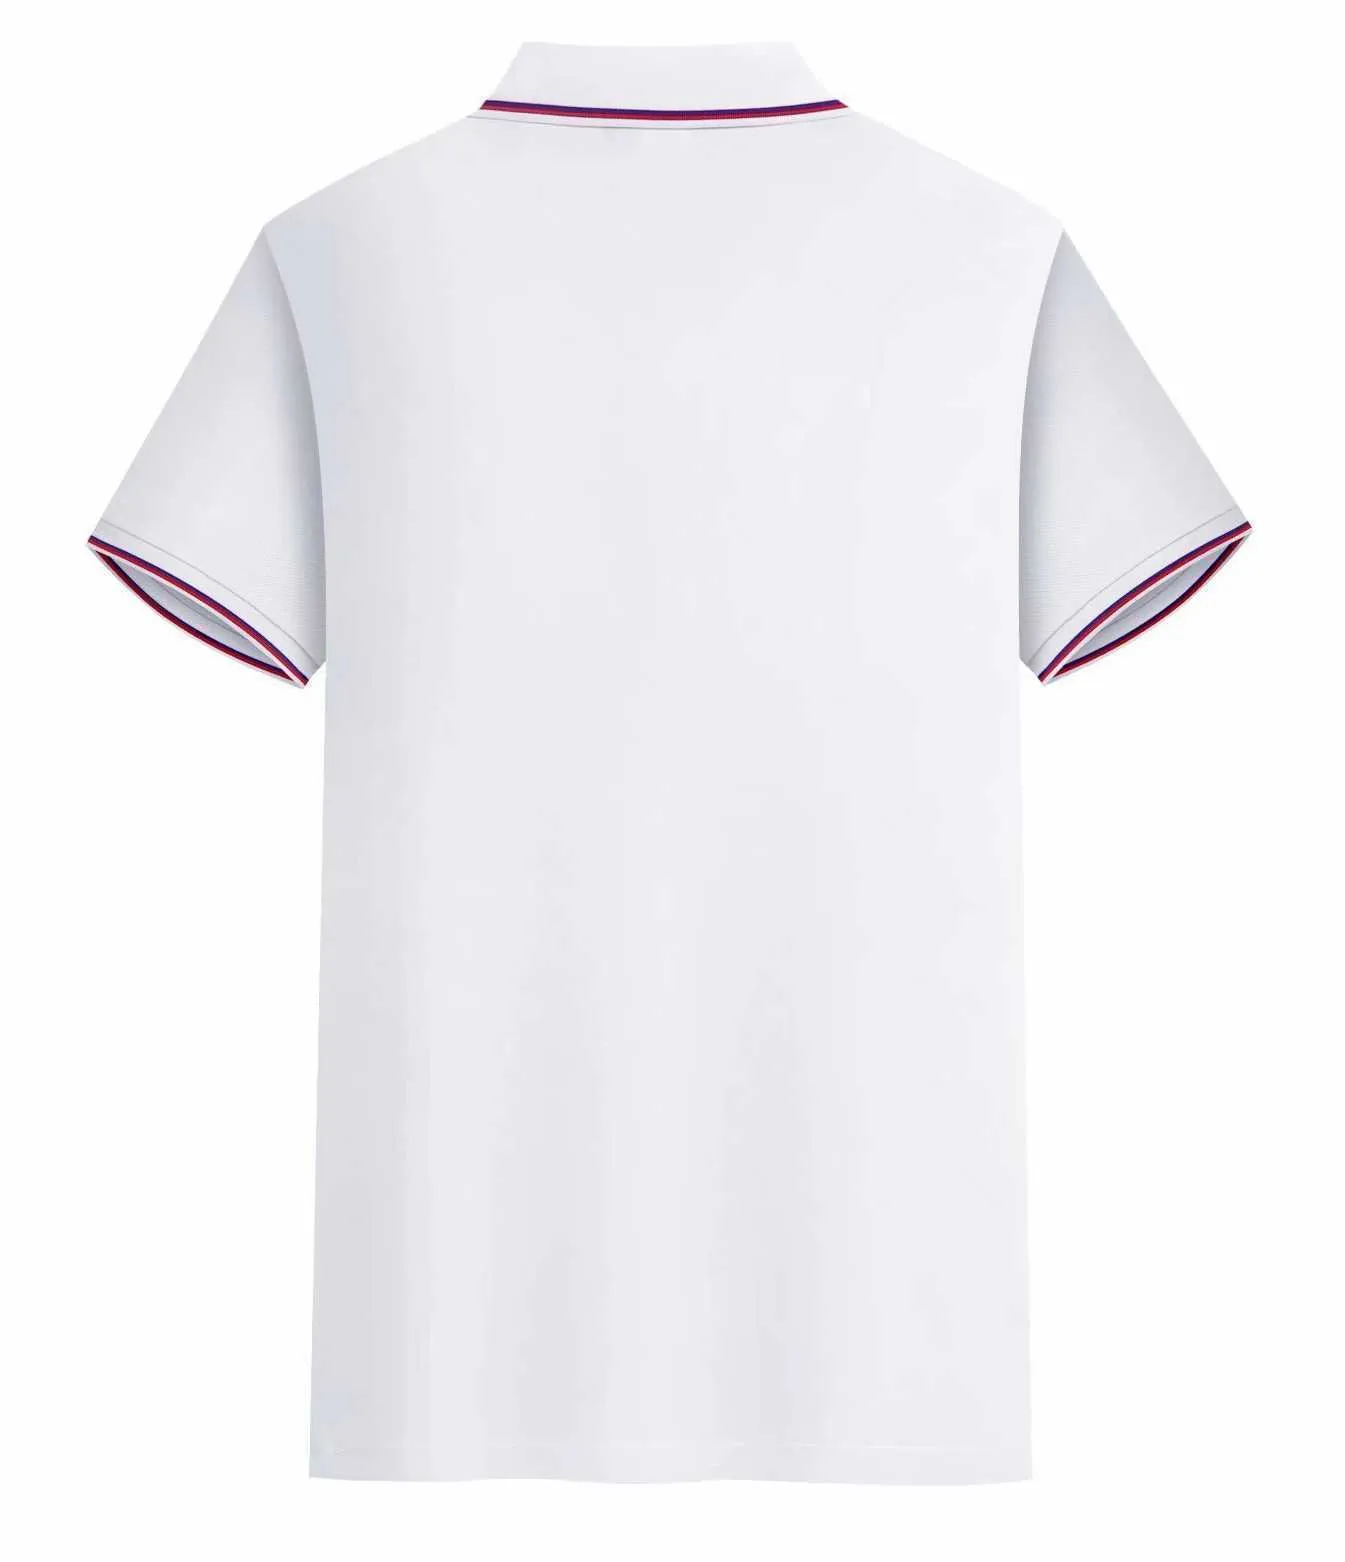 2021 2022 camiseta de fútbol de personalización simple 21 22 camiseta de entrenamiento de fútbol ropa deportiva AAA943